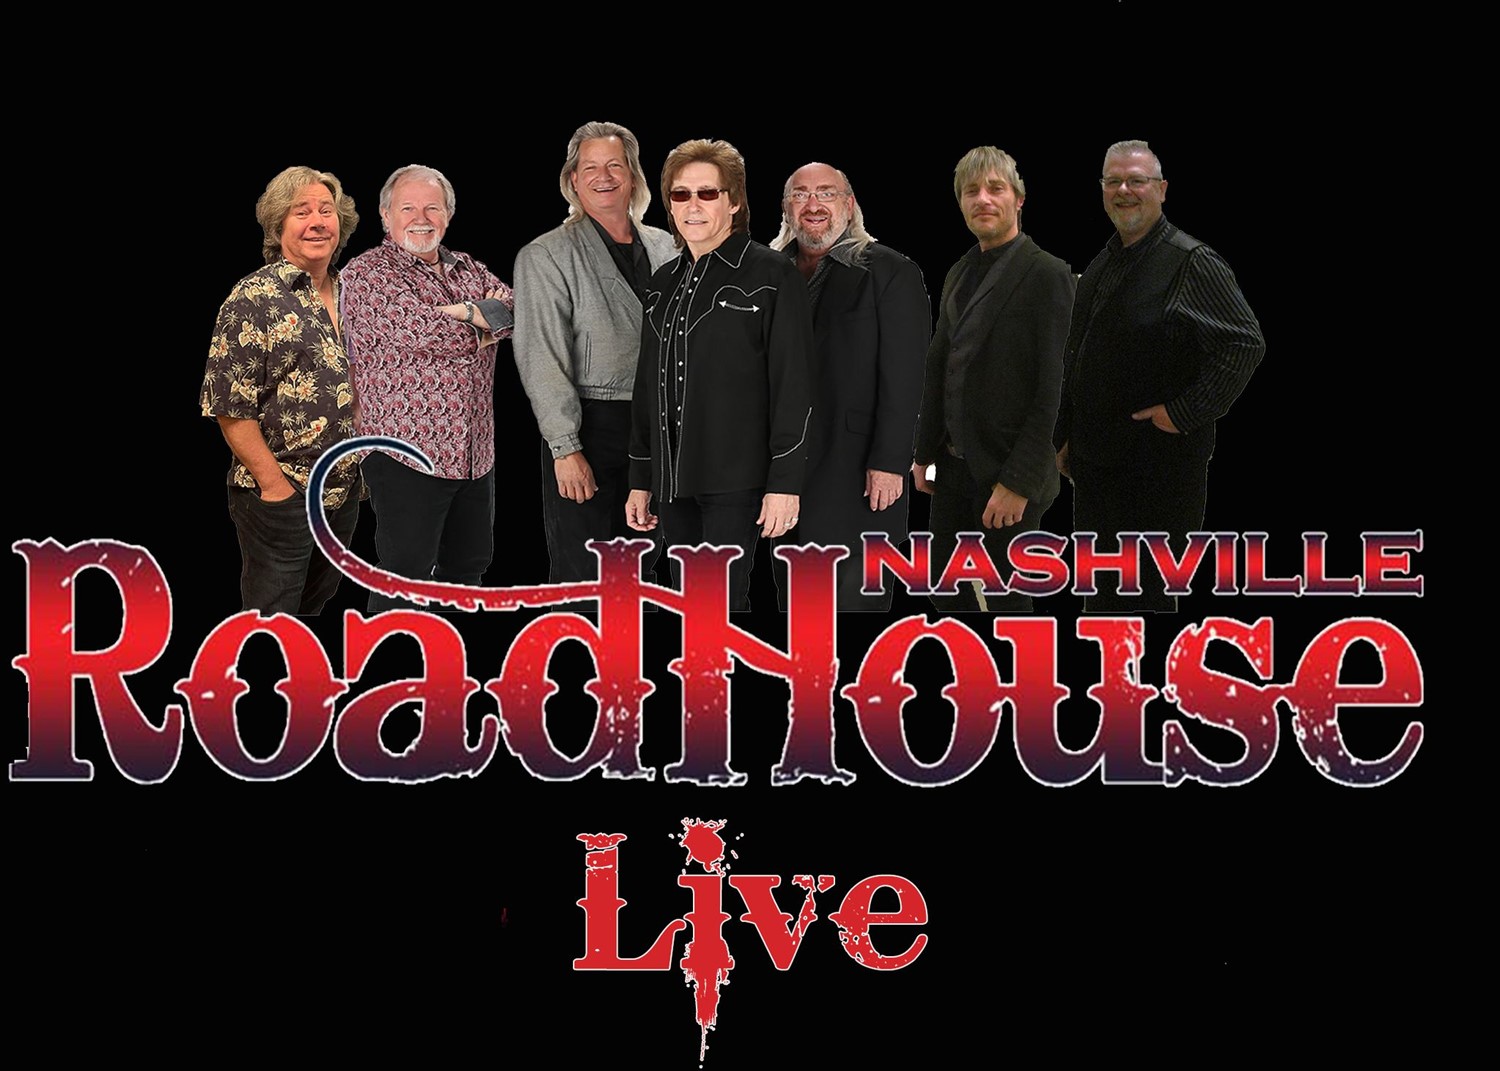 Nashville Roadhouse Live  on déc. 17, 00:00@Pierce Arrow Theater - Choisissez un siège,Achetez des billets et obtenez des informations surnashvilleroadhouse.com bransonstartheater